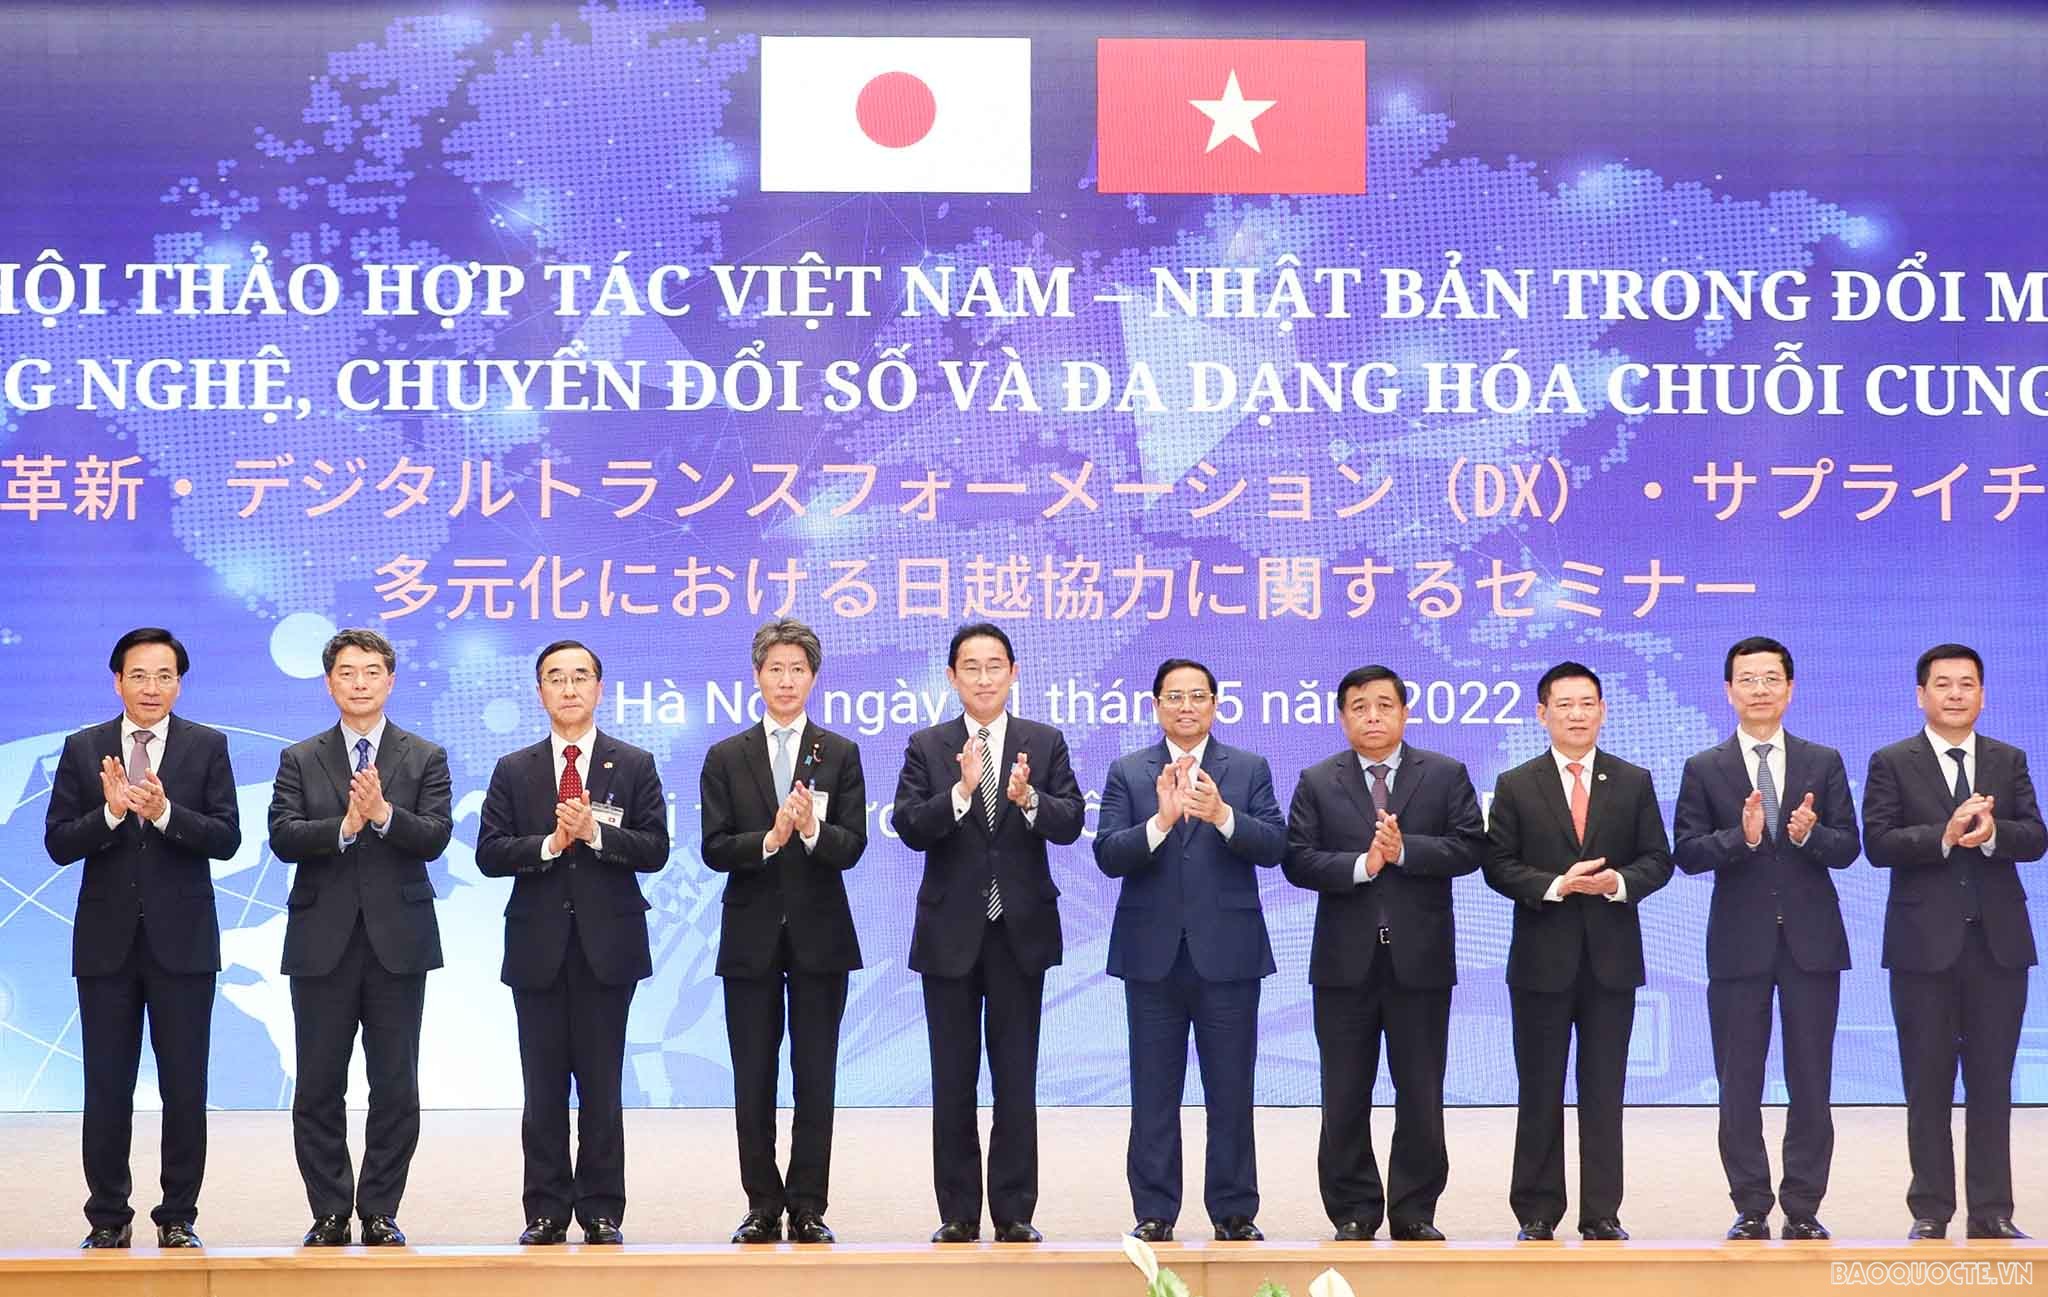 Thủ tướng Nhật Bản: Khả năng hợp tác Việt Nam-Nhật Bản là không có giới hạn